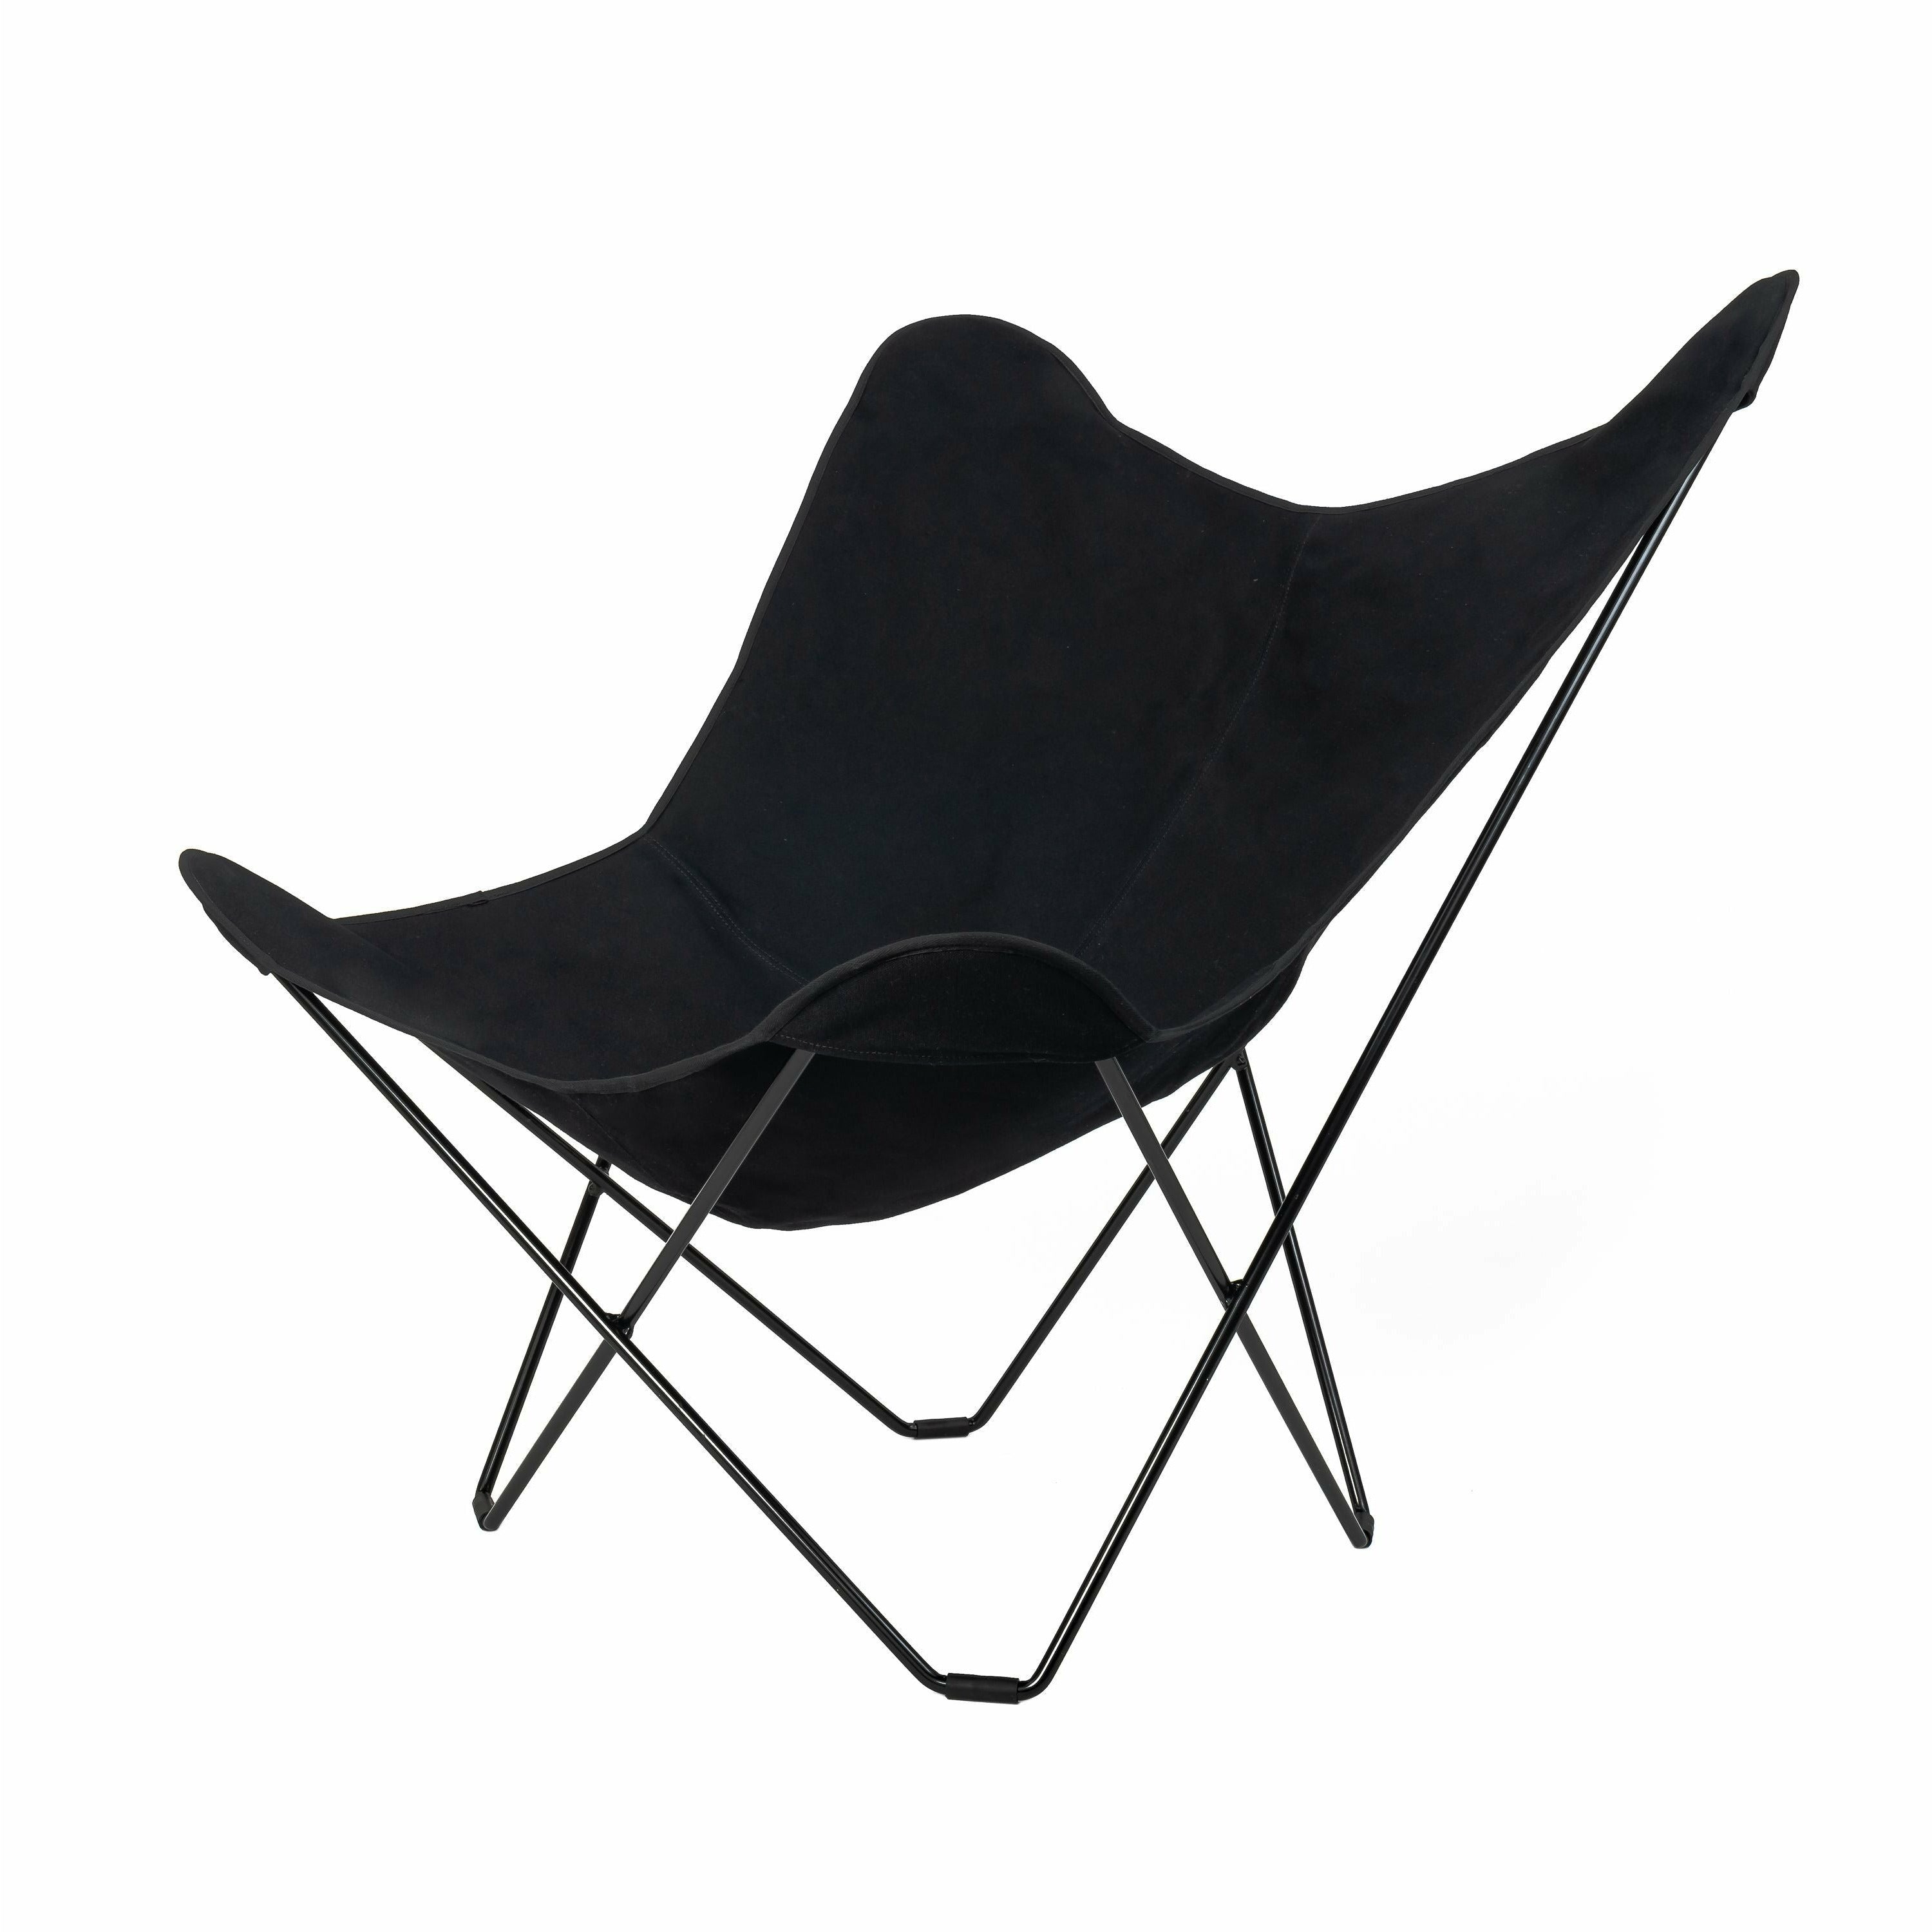 Cuero bavlněné plátno mariposa židle, černá s černým rámem